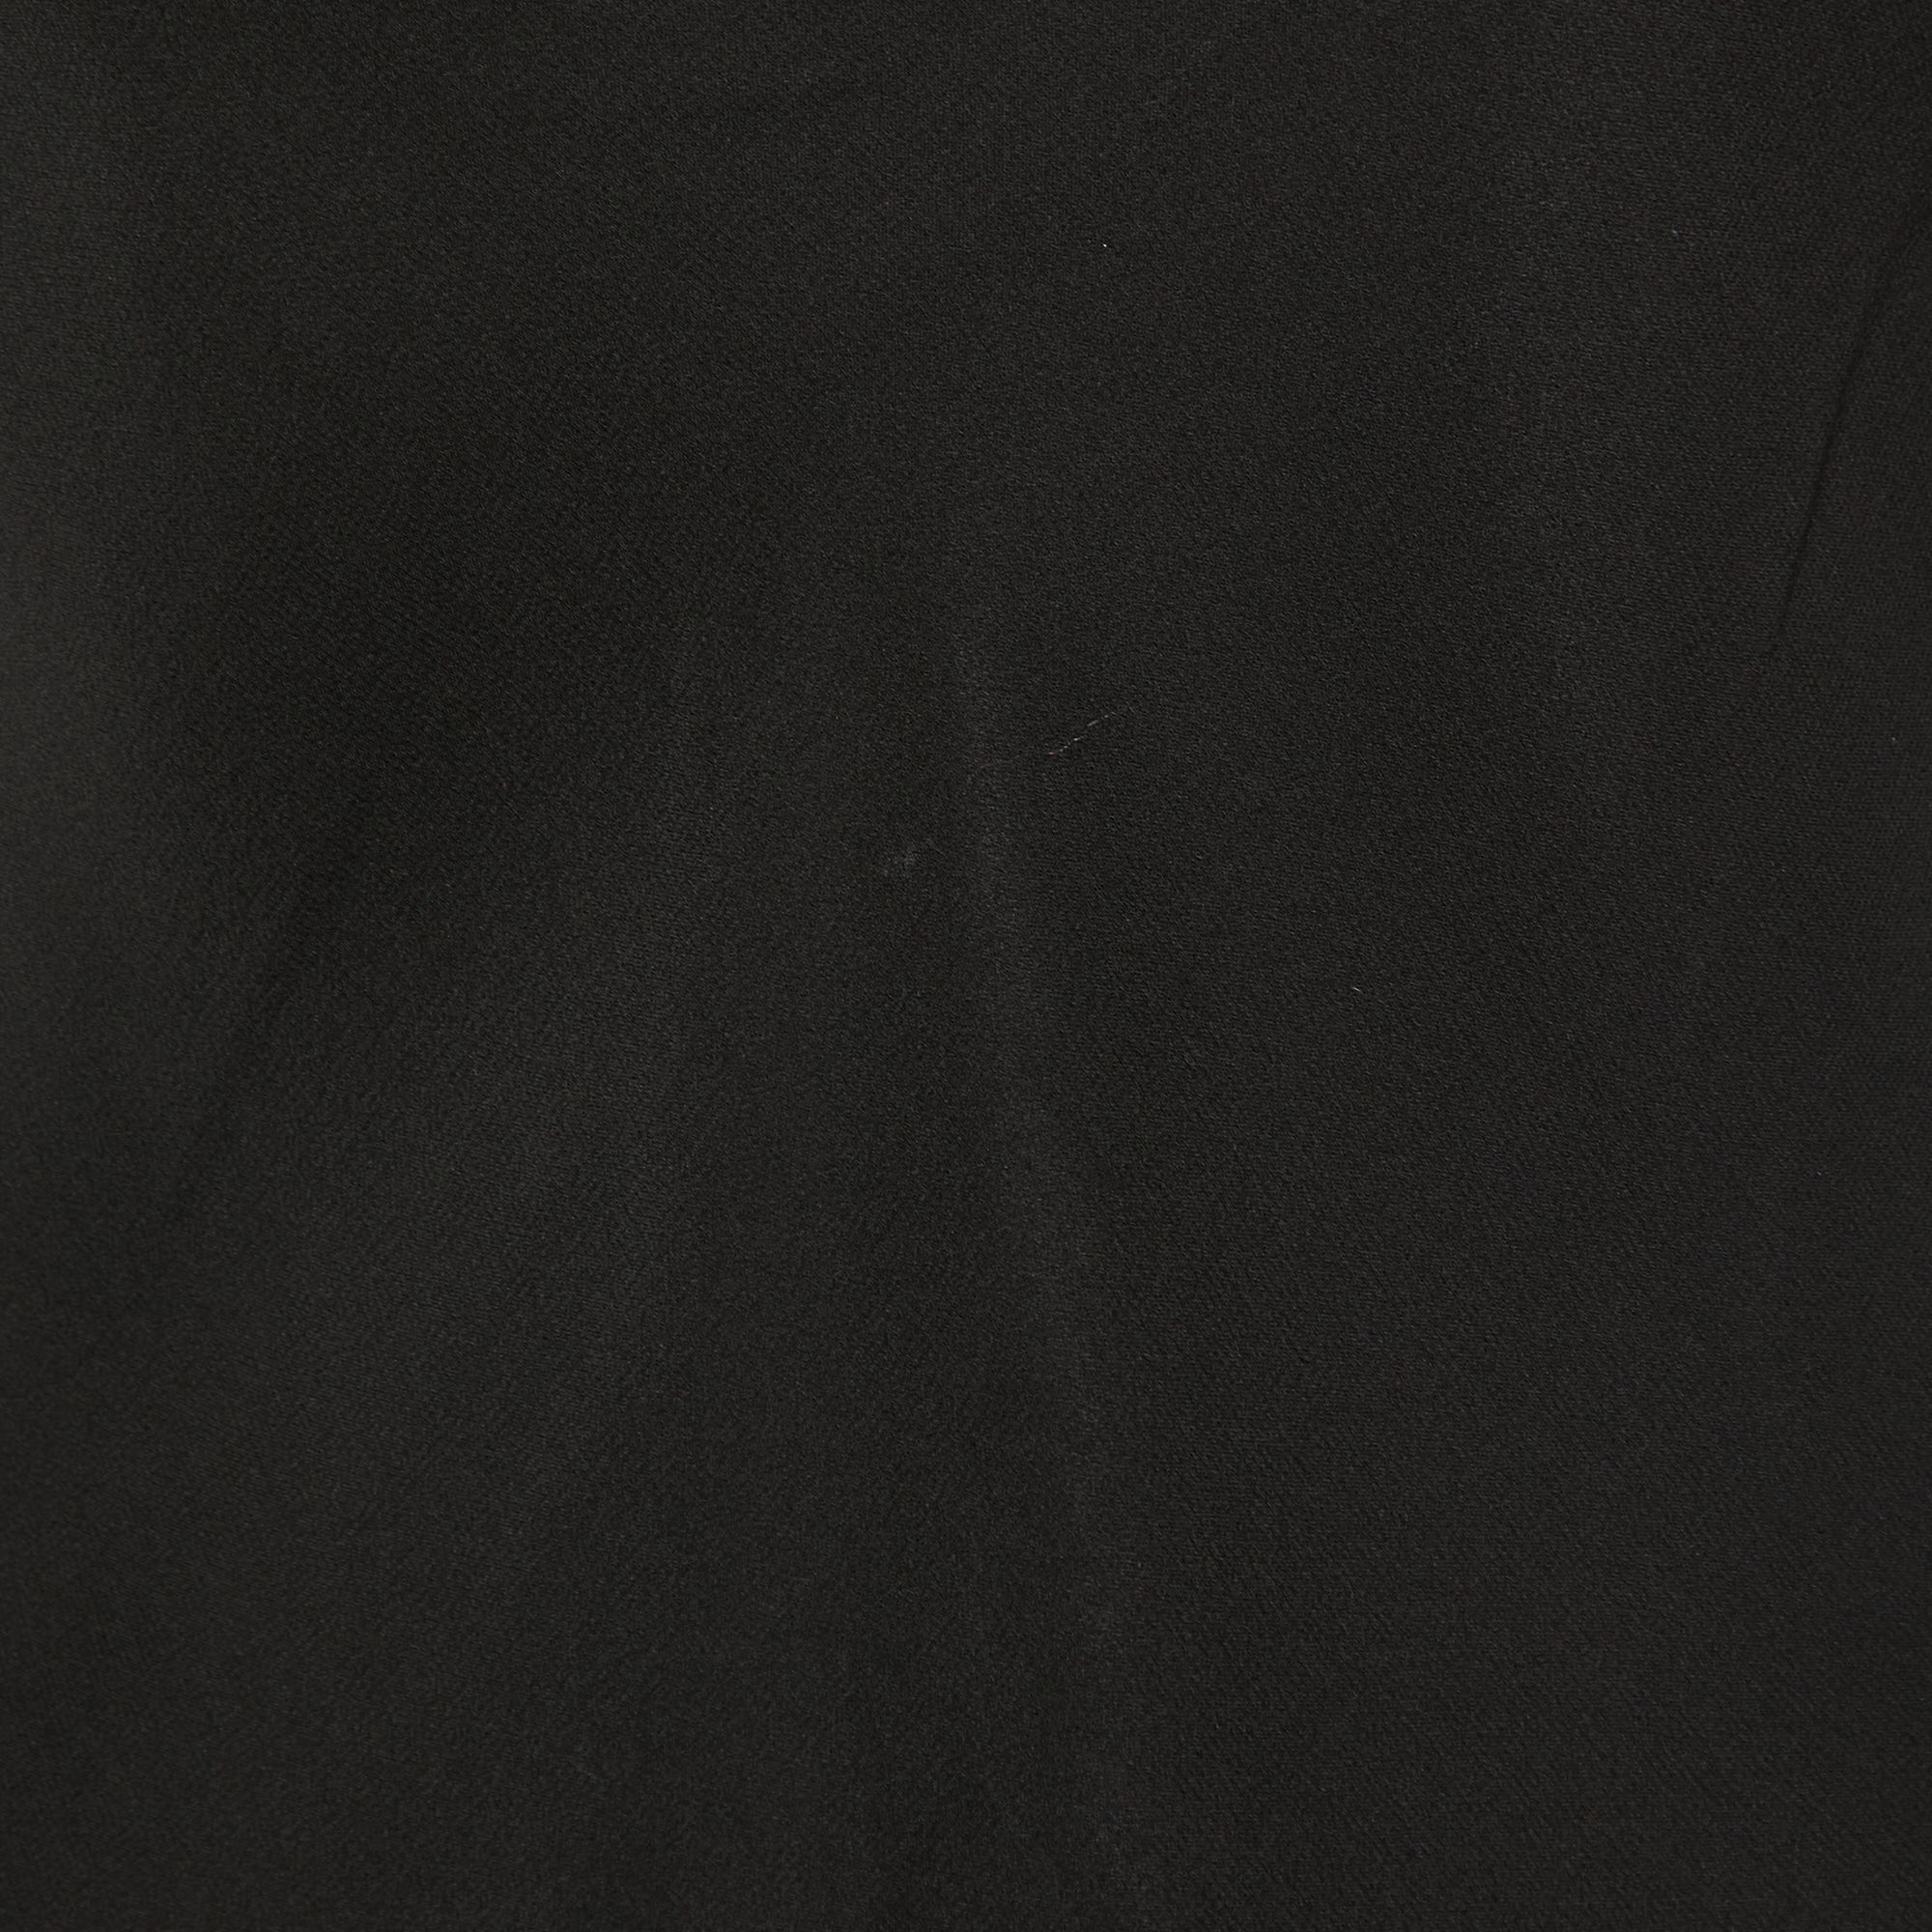 Etro Black Embellished Silk Long Sleeve Blouse M